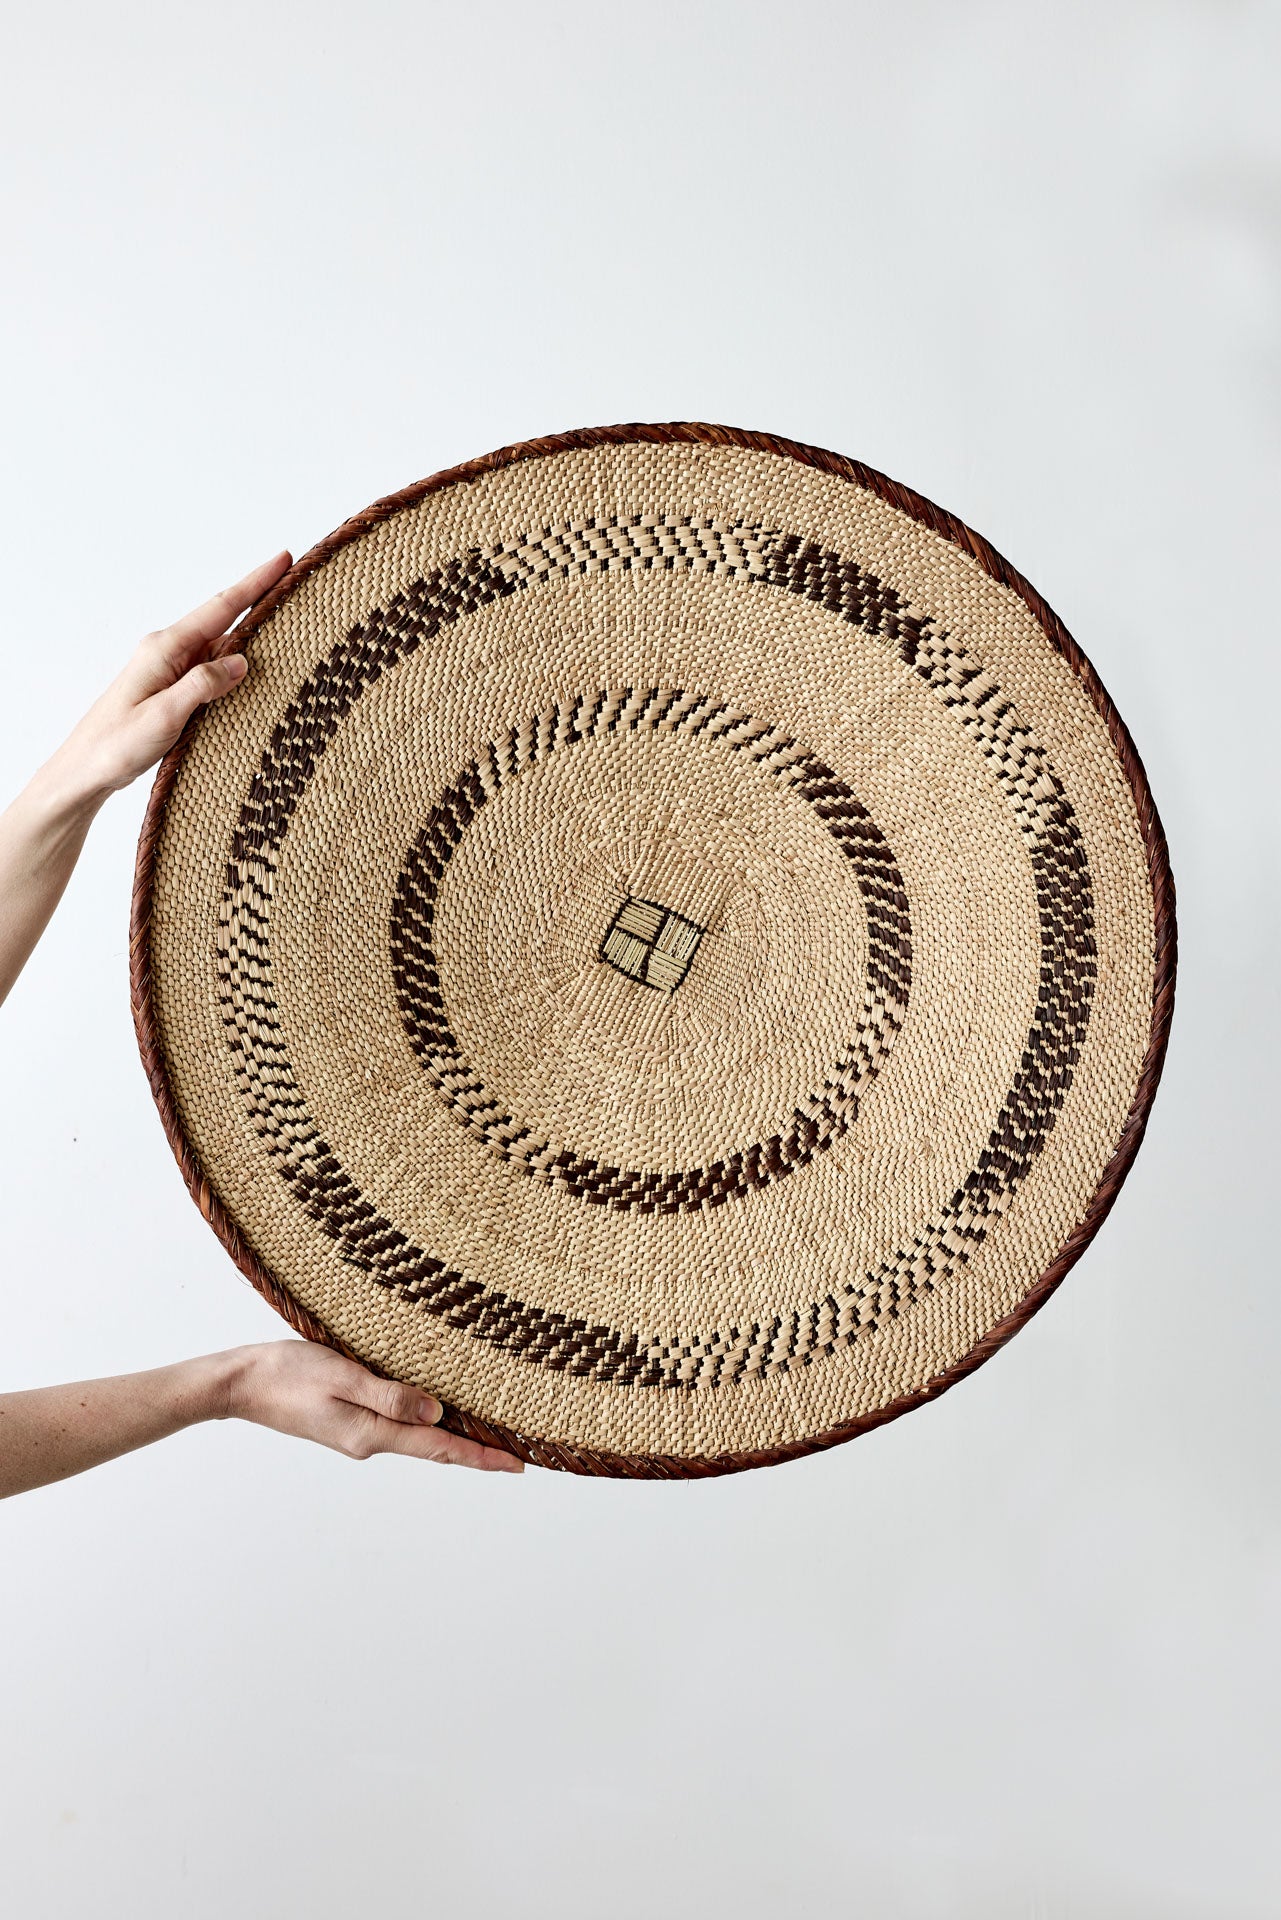 African Wall Basket Decor | Binga Patterned Wall Art